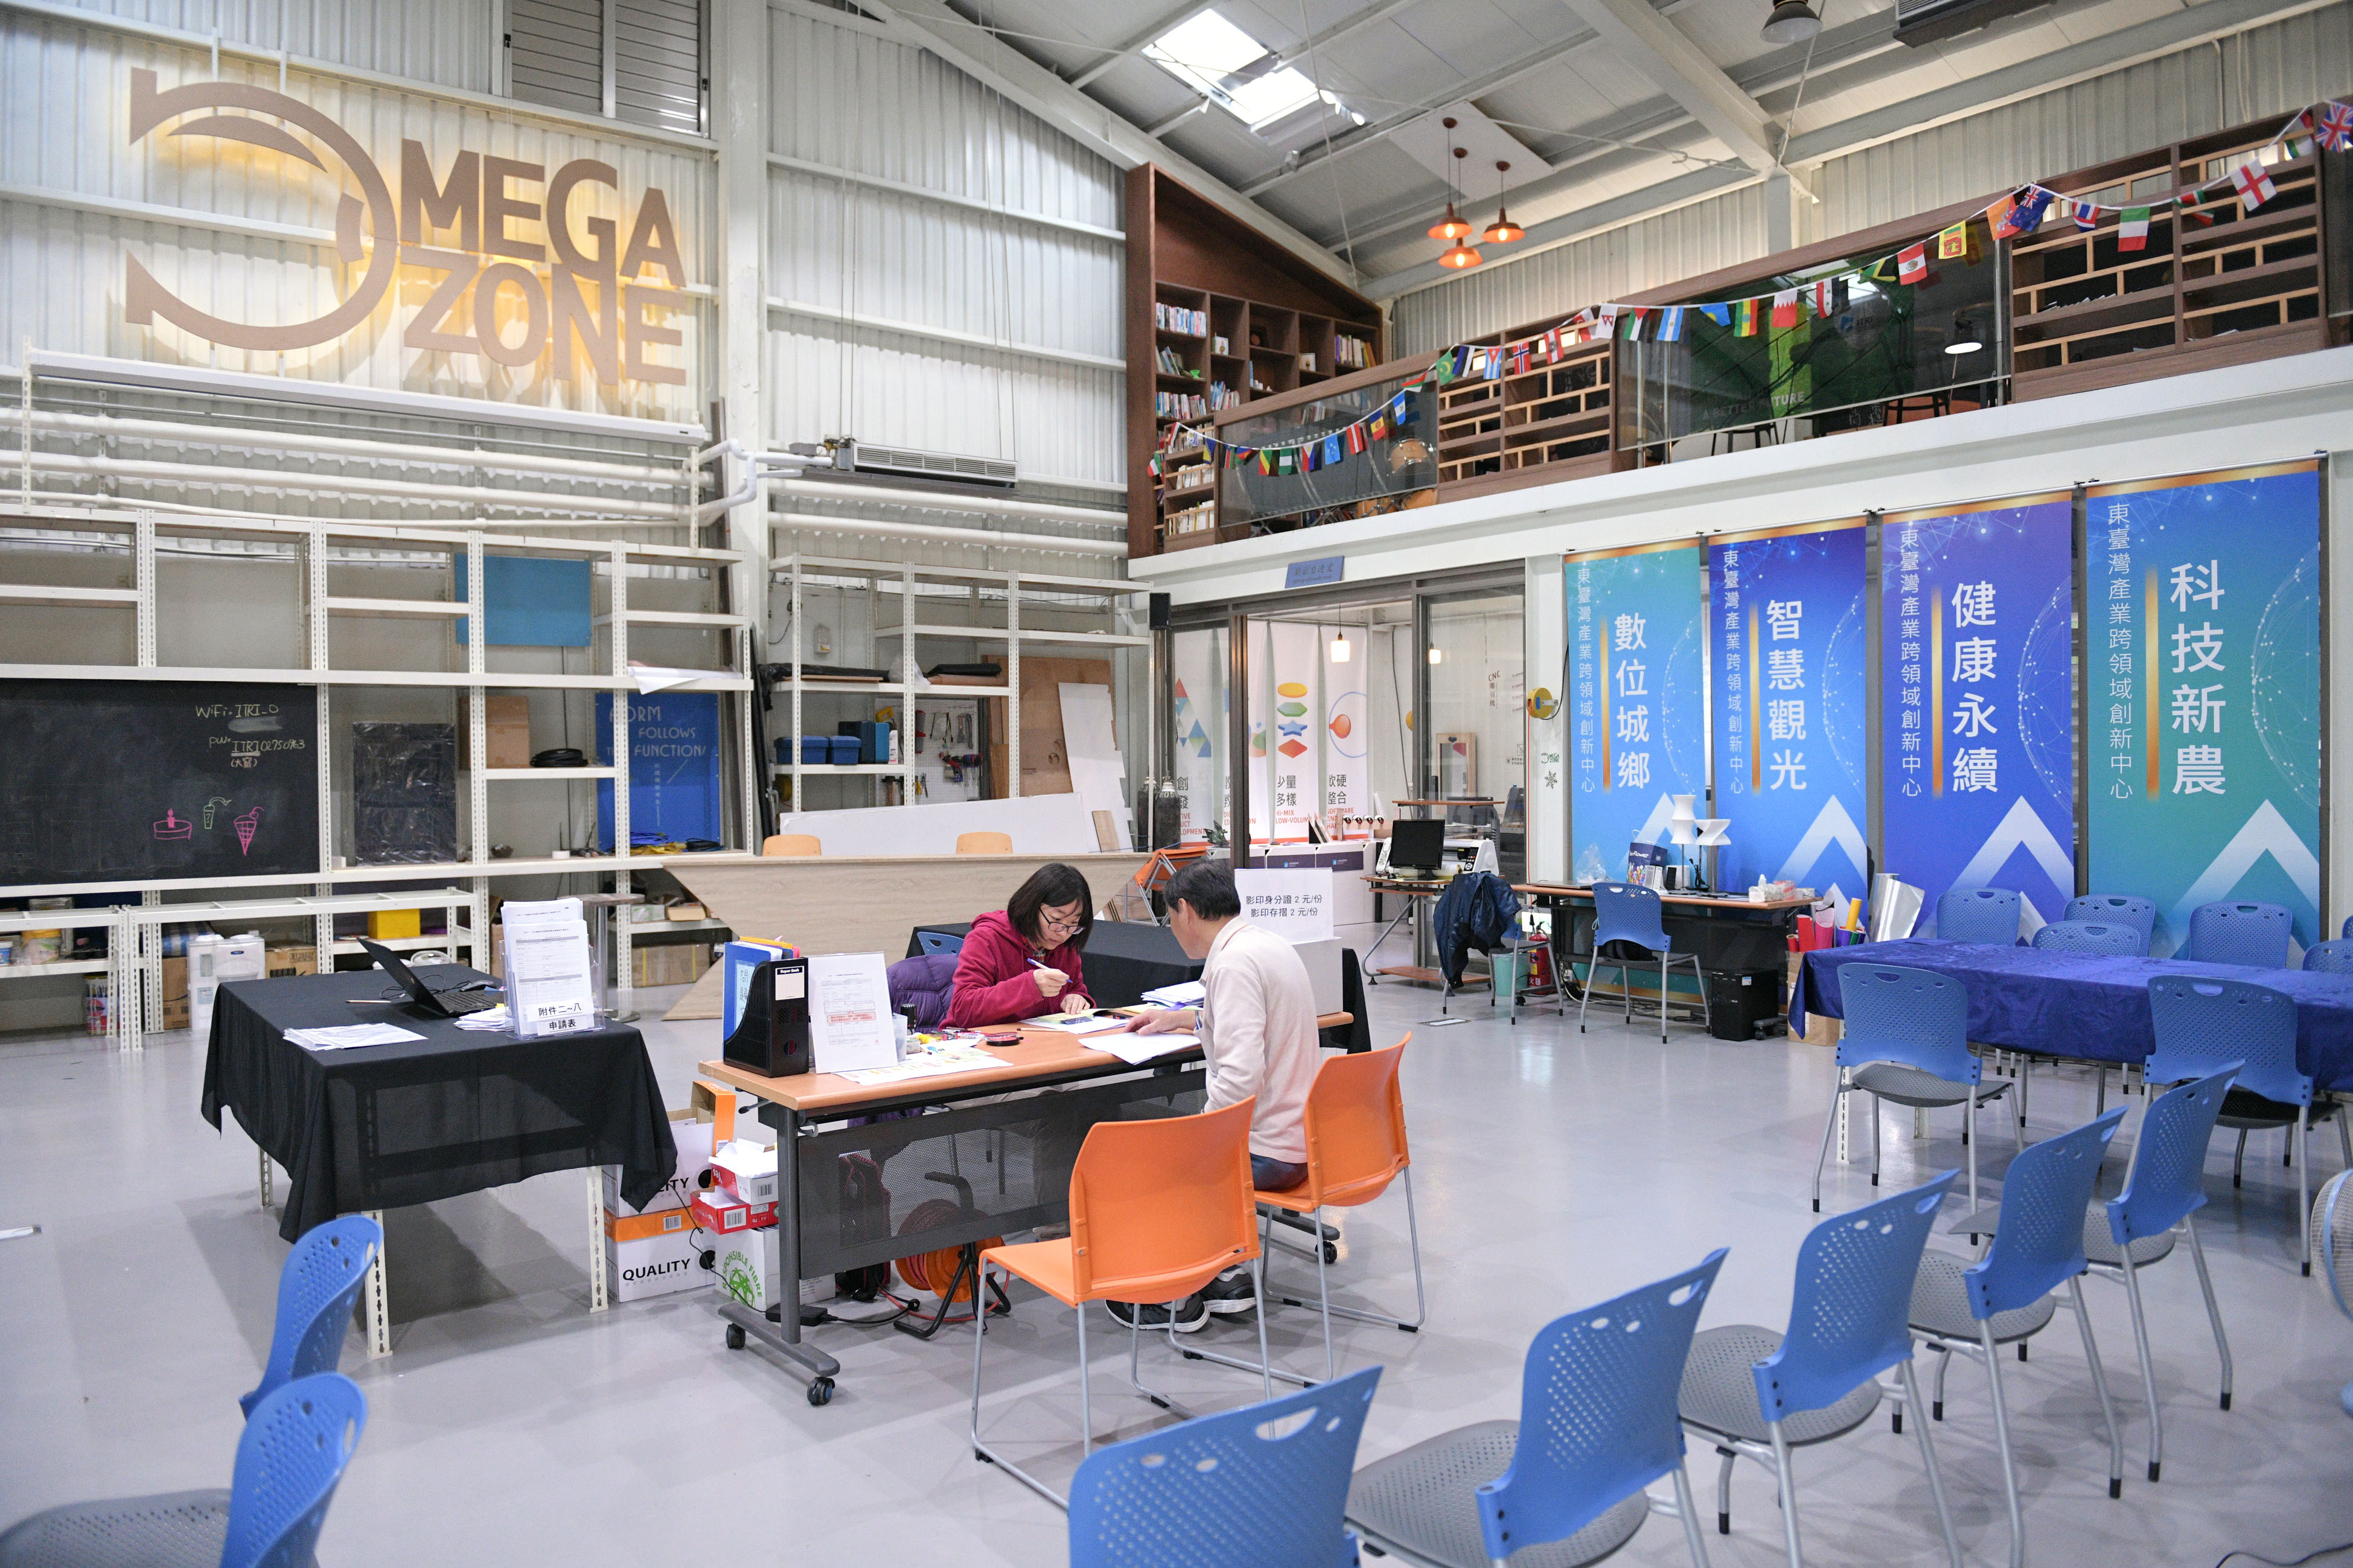 位於工研院東部產業服務中心Omega Zone一隅，花東有志青年能在此處討論激發創意，讓夢想種子成長茁壯。